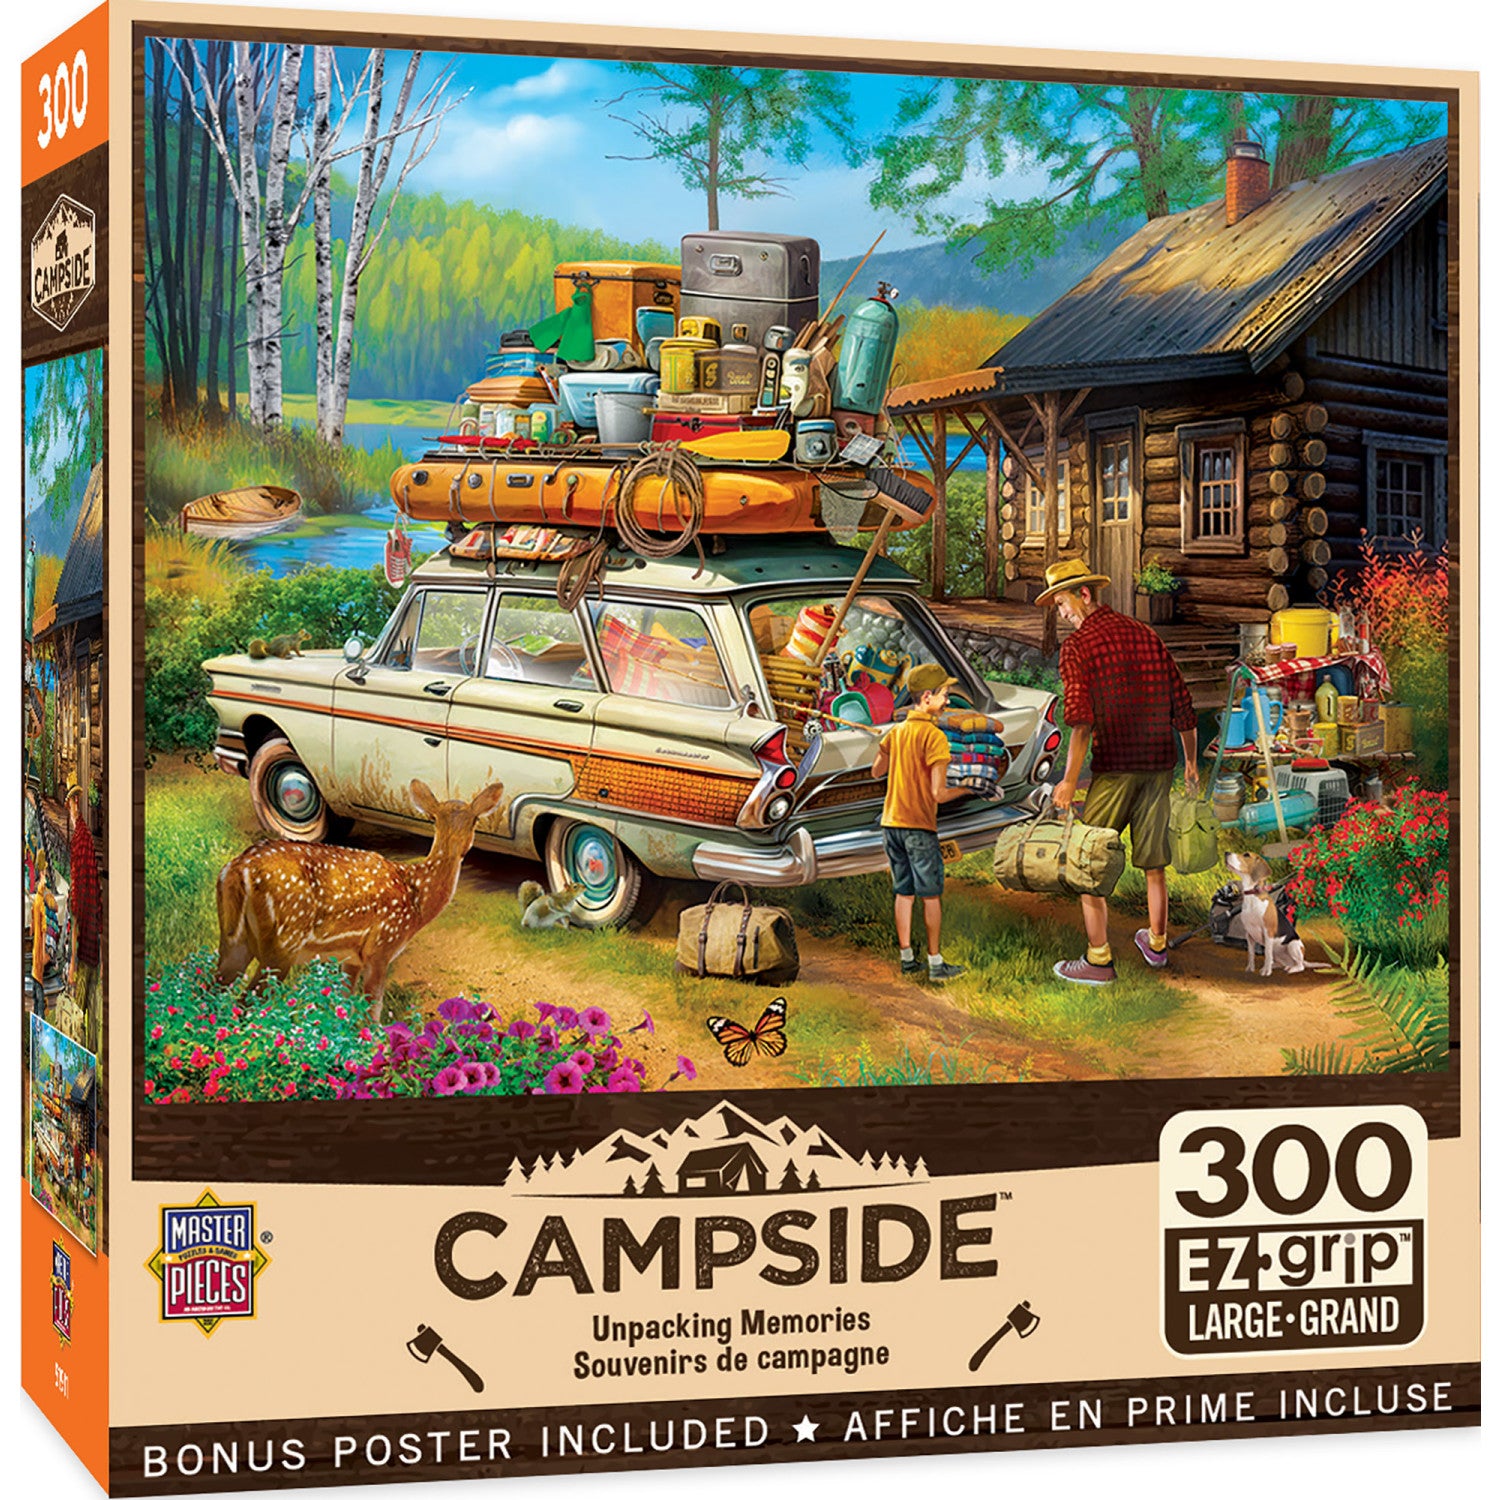 Campside - Unpacking Memories 300 Piece EZ Grip Jigsaw Puzzle